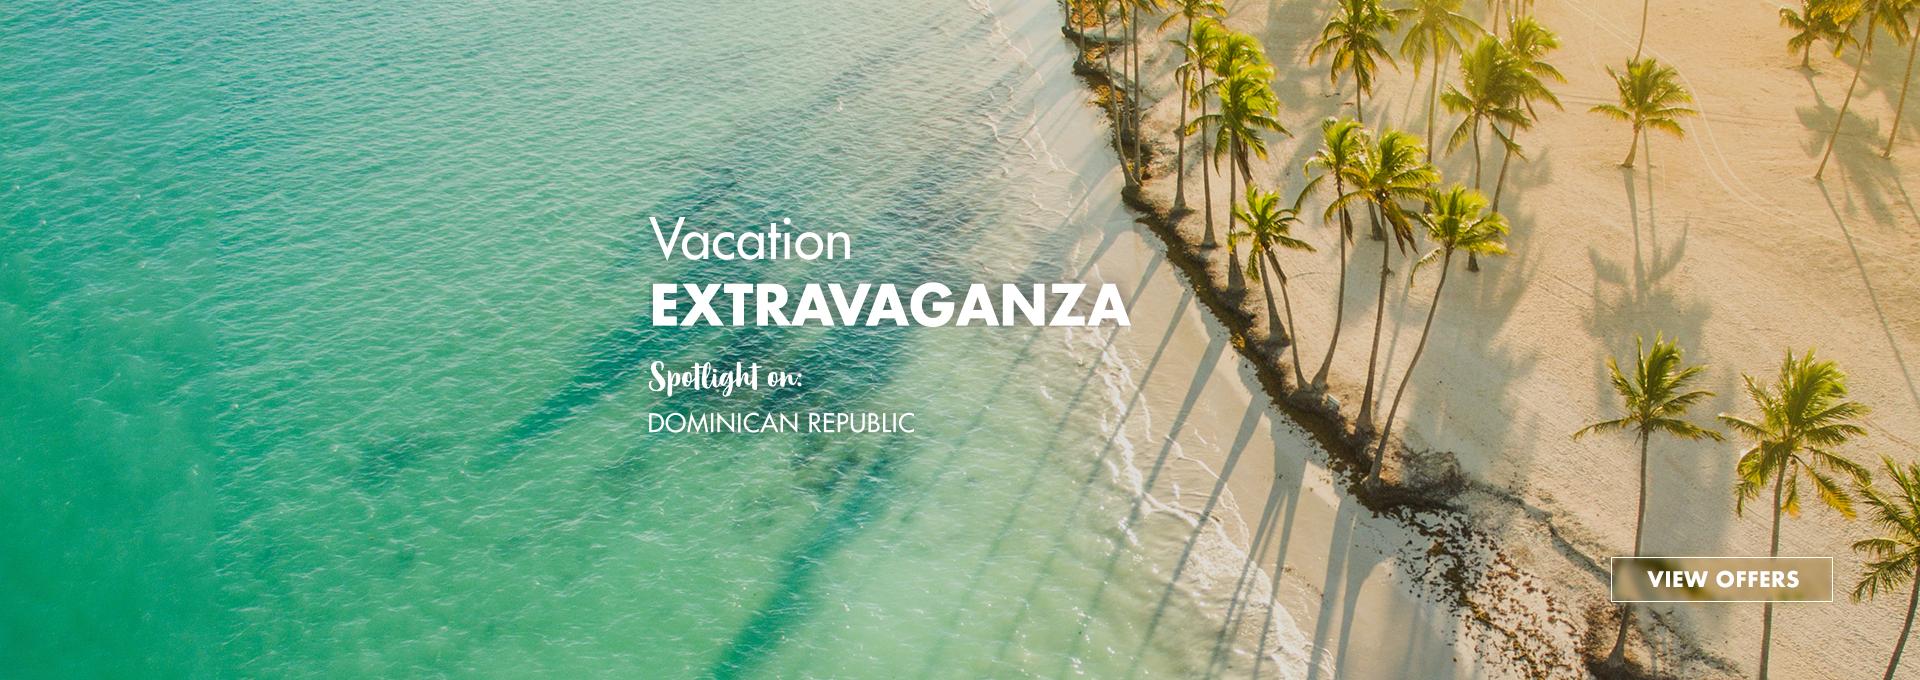 Dominican Republic Vacation Extravaganza